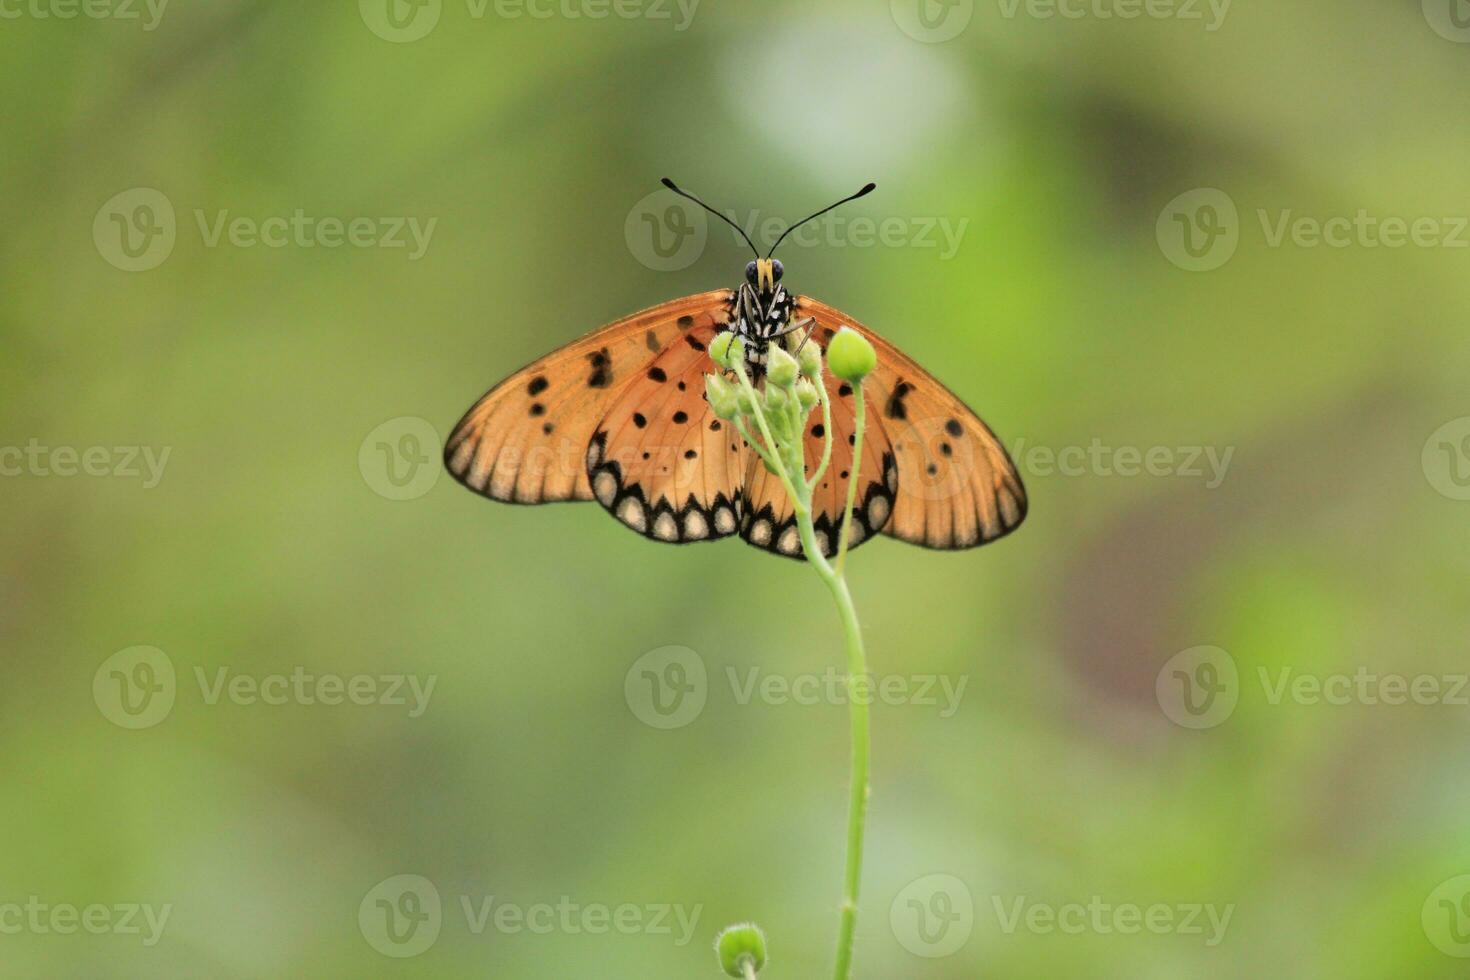 en skön fjäril uppflugen på en vild växt under en mycket solig dag foto